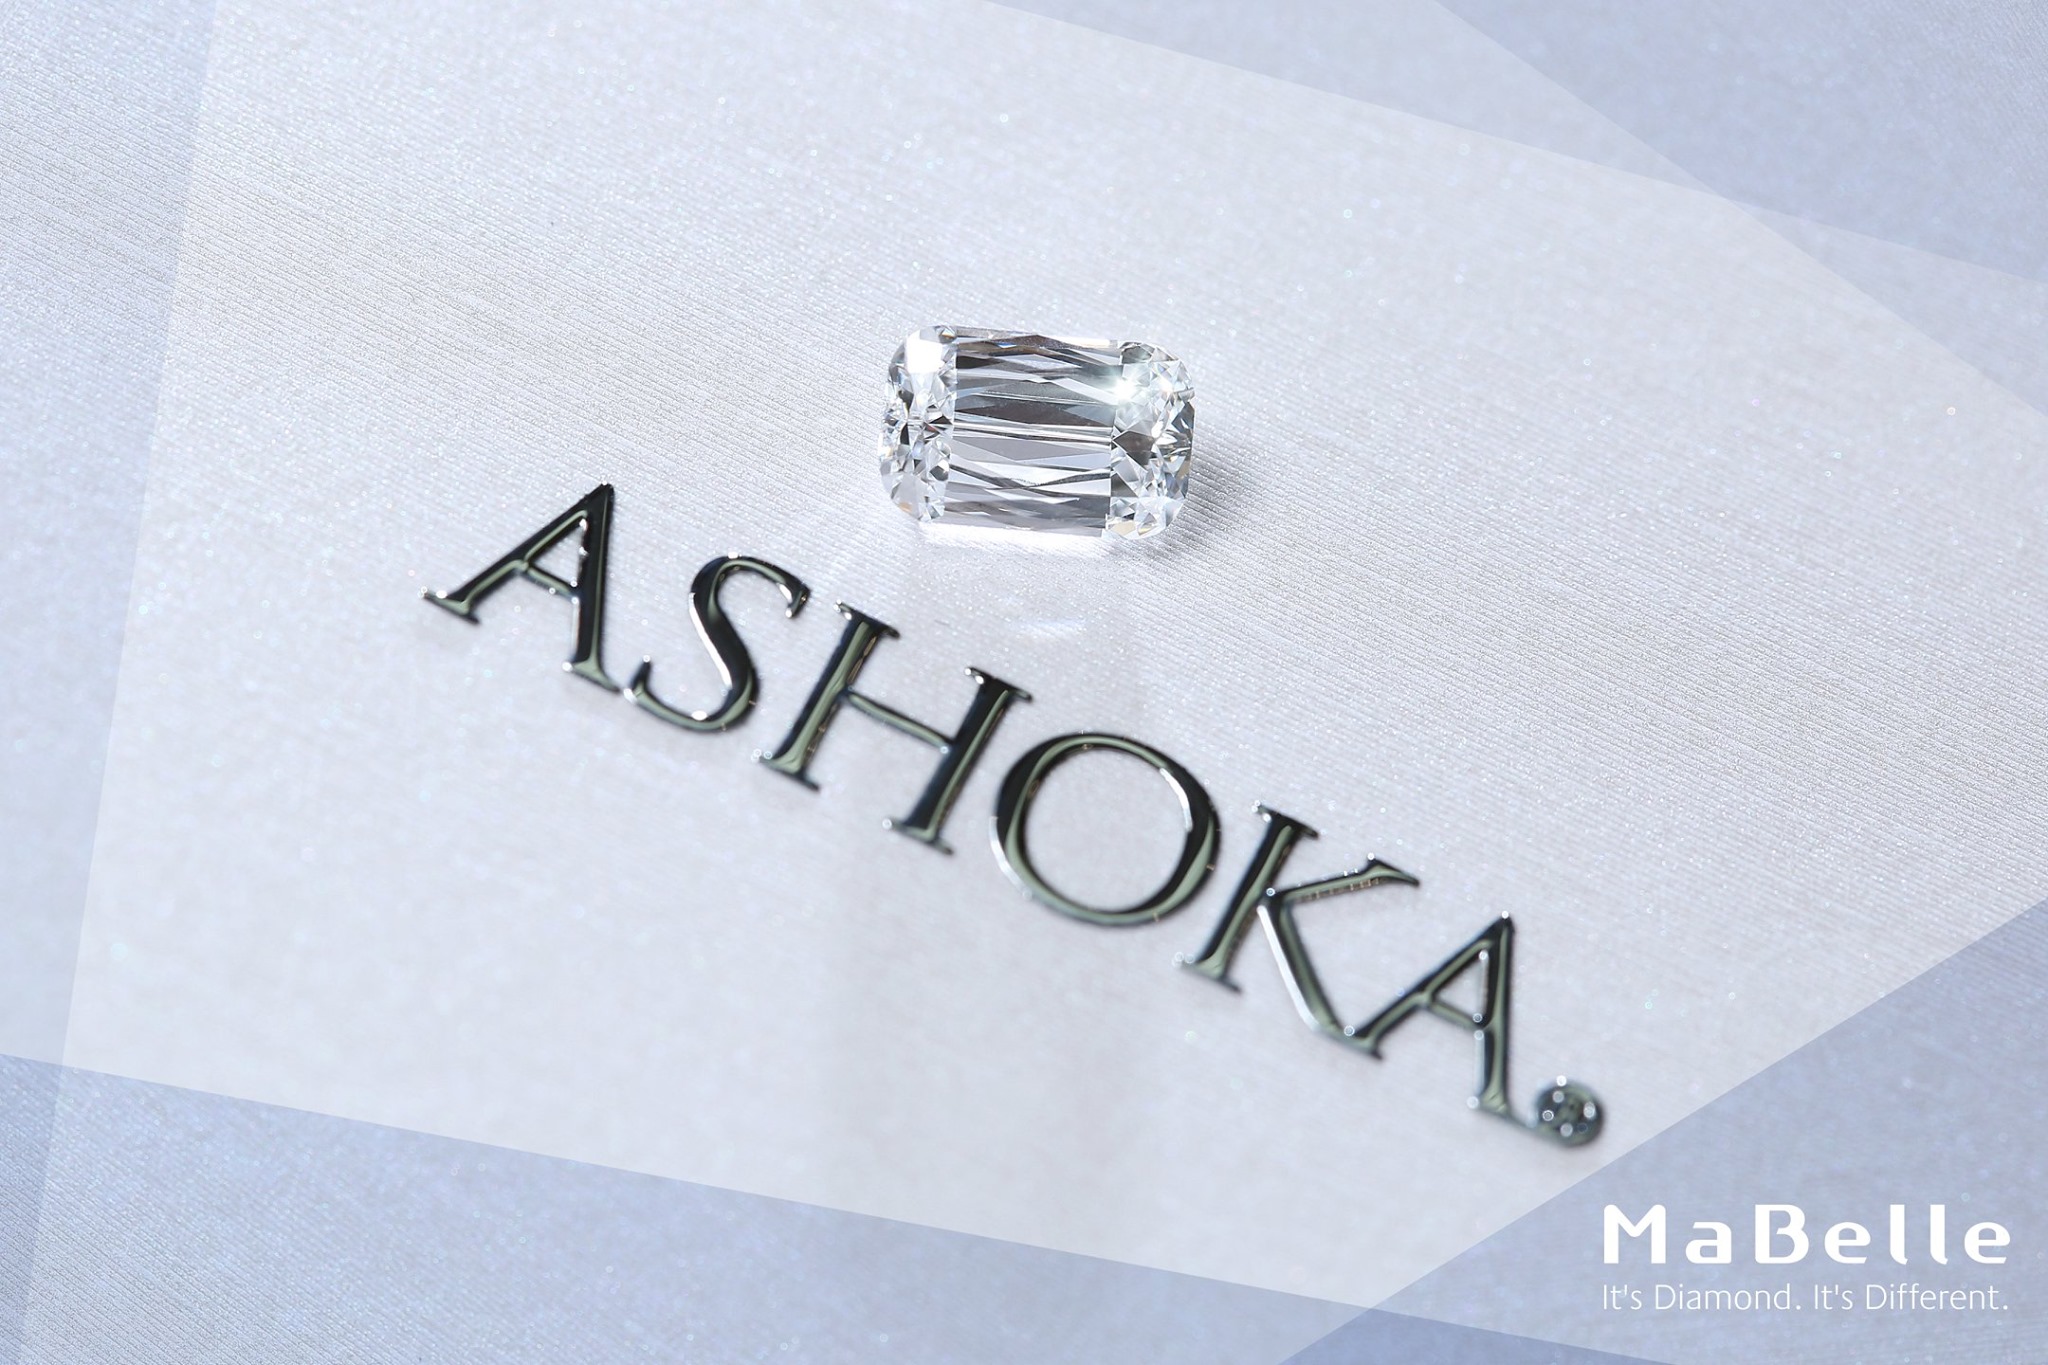 採用古典長邊枕形切割的ASHOKA®，是花式切割入門必備鑽飾。把握限時8折優惠，體驗稀世美鑽ASHOKA®的懾人氣派，立即展開ASHOKA®品味傳奇之旅。